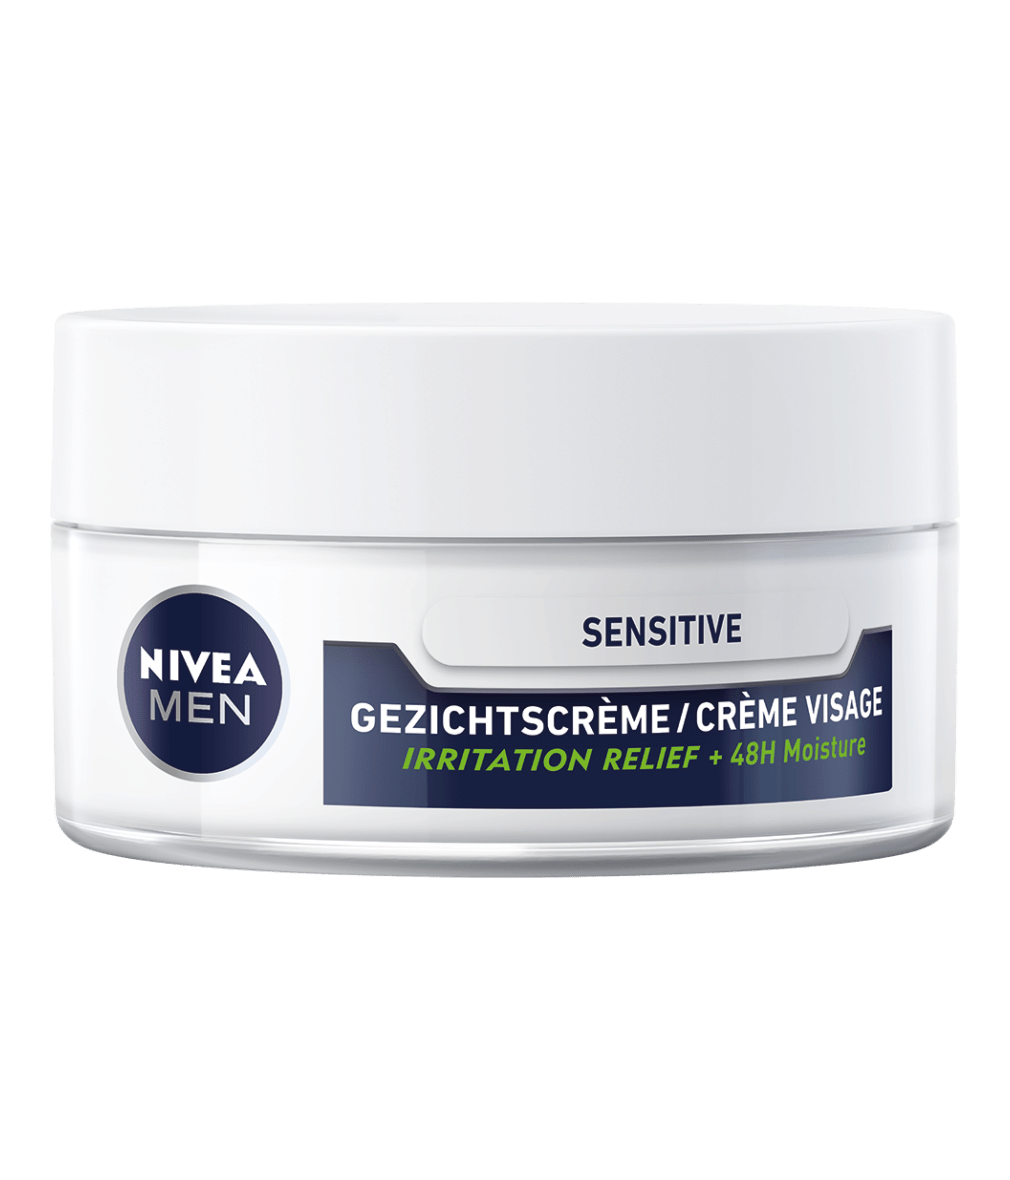 Pigment misdrijf De eigenaar Sensitive Gezichtscrème - 48 uur hydratatie - NIVEA MEN